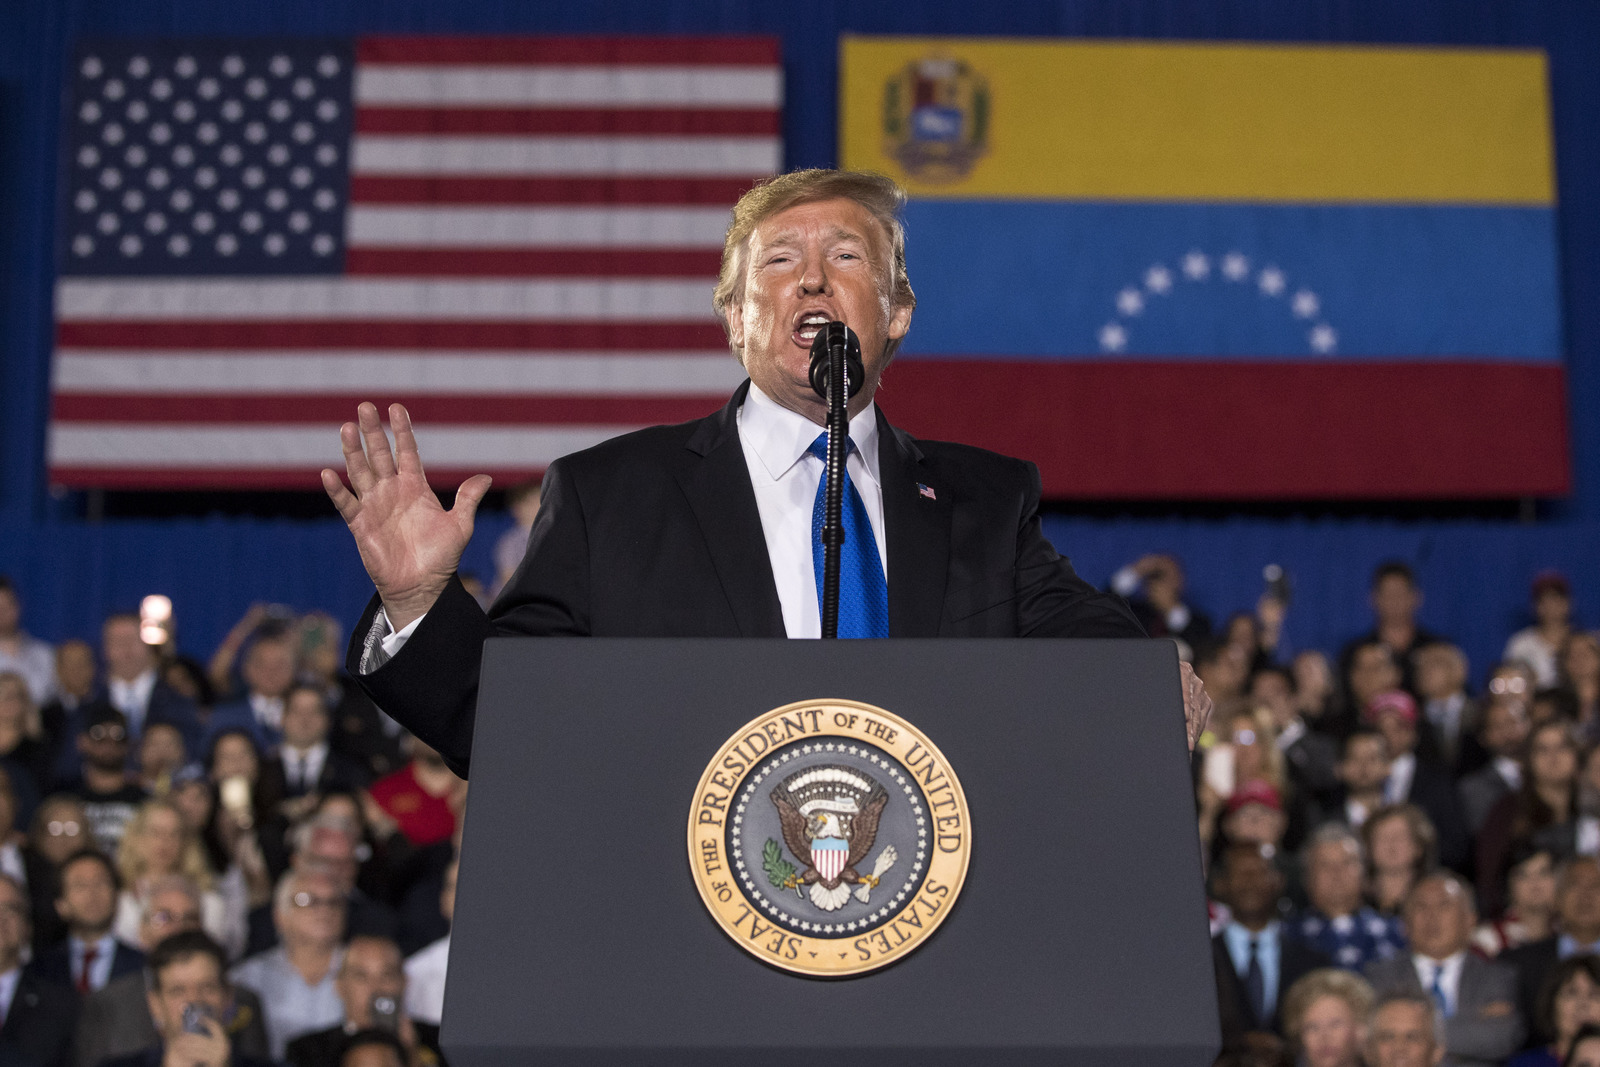 Mensaje. El presidente Donald Trump habló ante una comunidad de estadounidenses de origen venezolano en la Universidad Internacional de Florida en Miami. (AP)